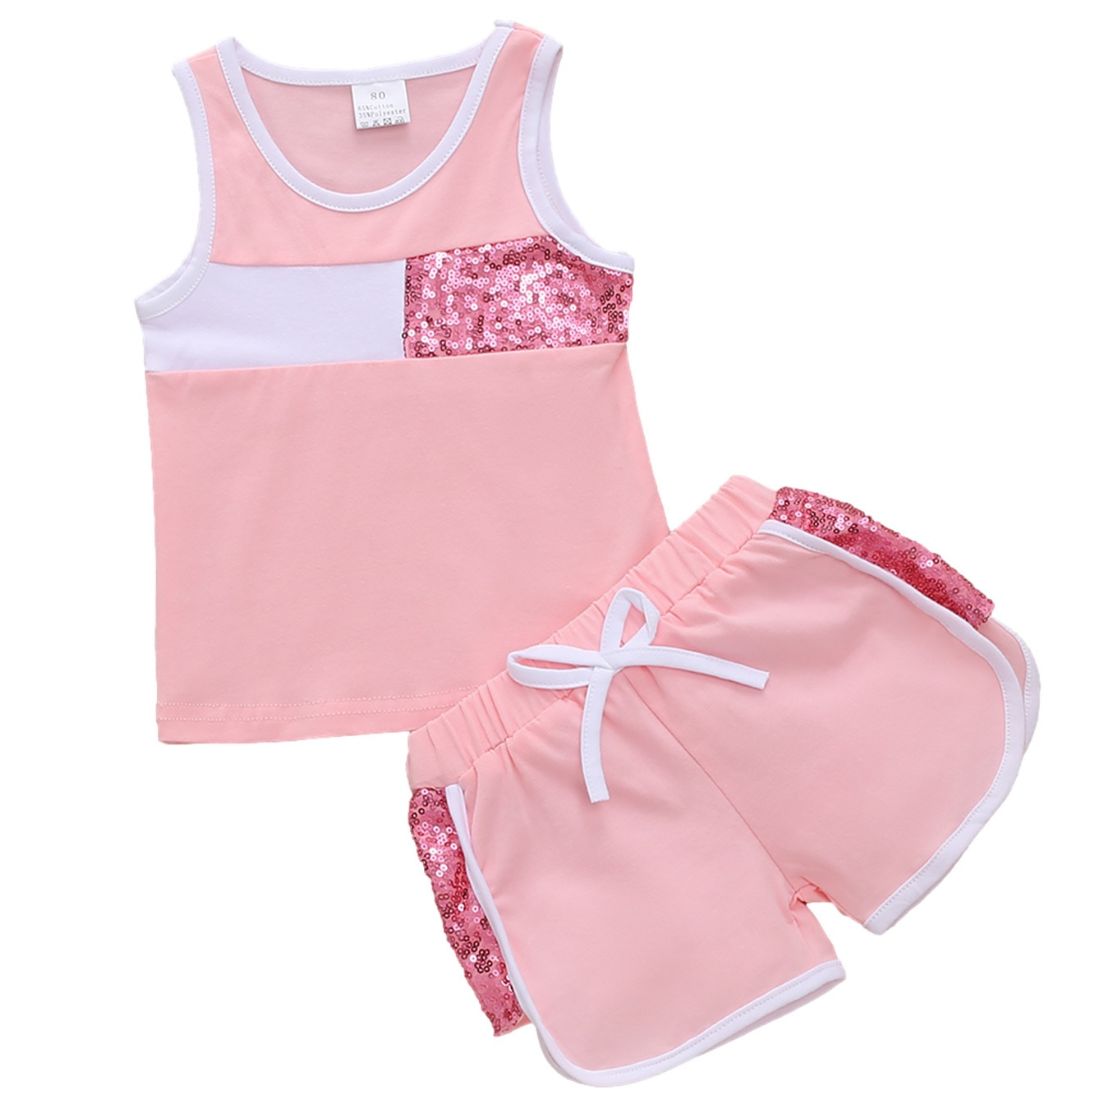 Bella Sparkle Pink Tank Toddler Clothing Set